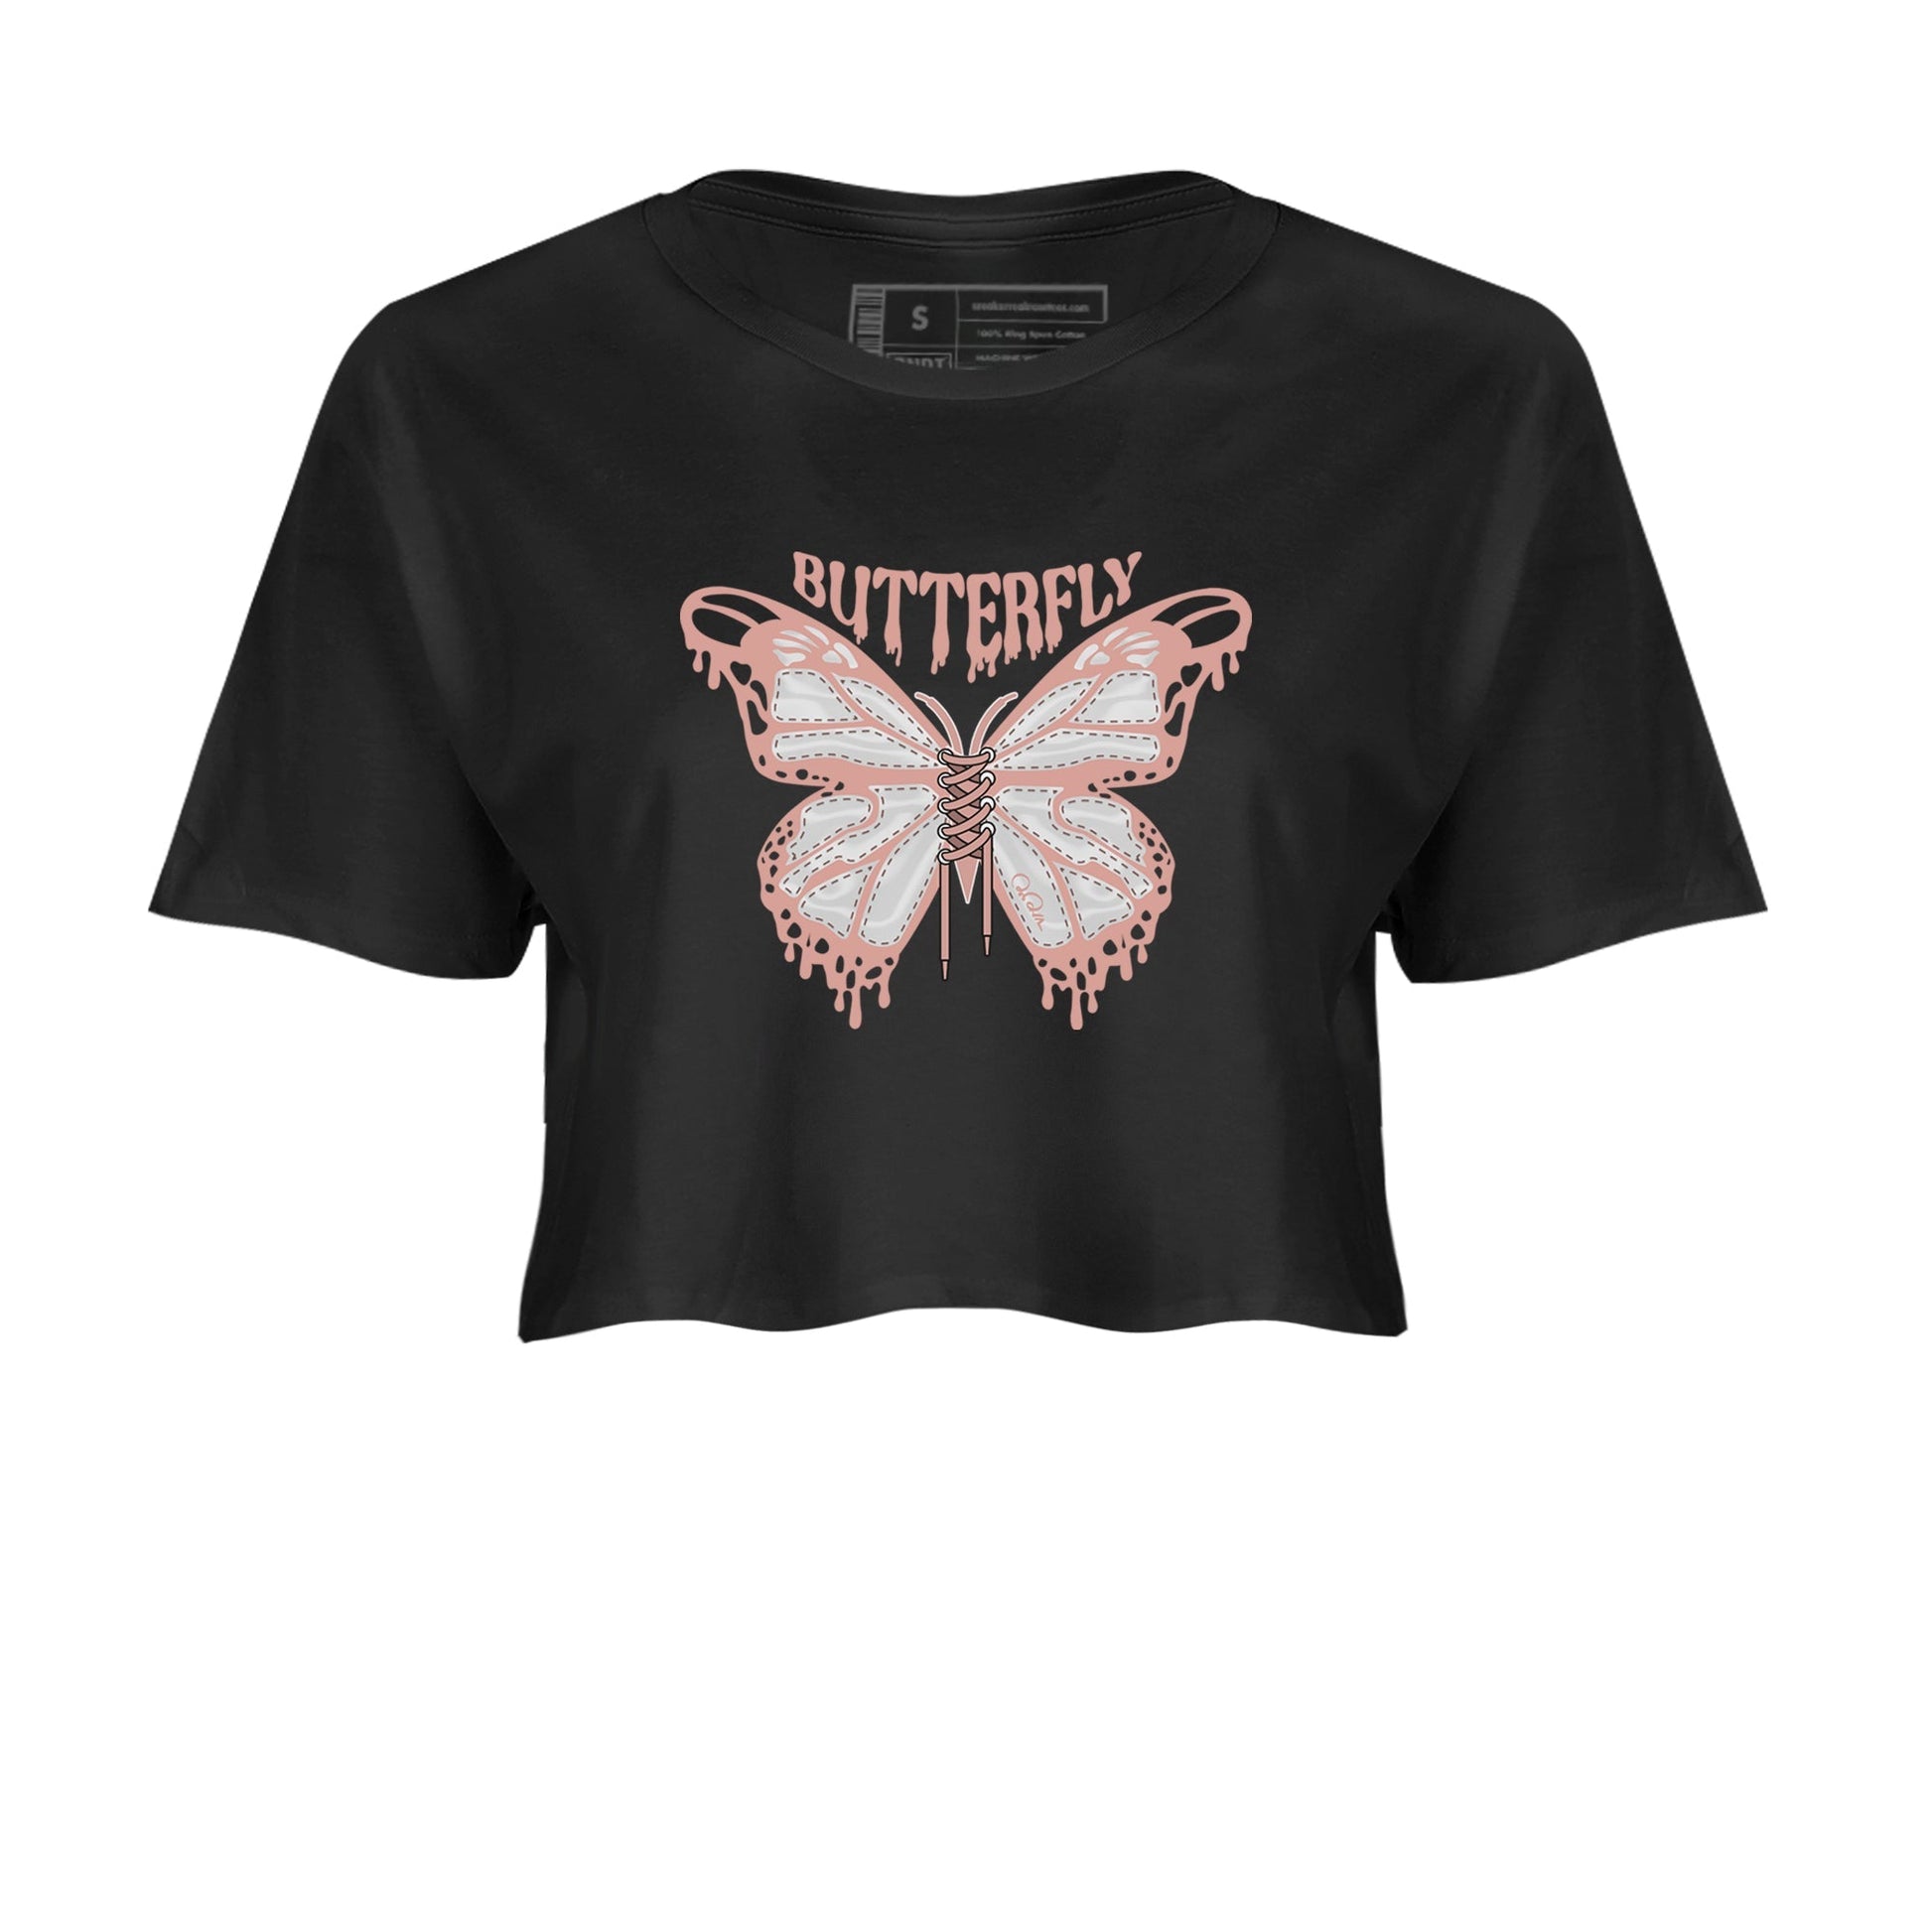 Dunk Rose Whisper shirt to match jordans Butterfly Streetwear Sneaker Shirt Nike Dunk LowRose Whisper Drip Gear Zone Sneaker Matching Clothing Black 2 Crop T-Shirt